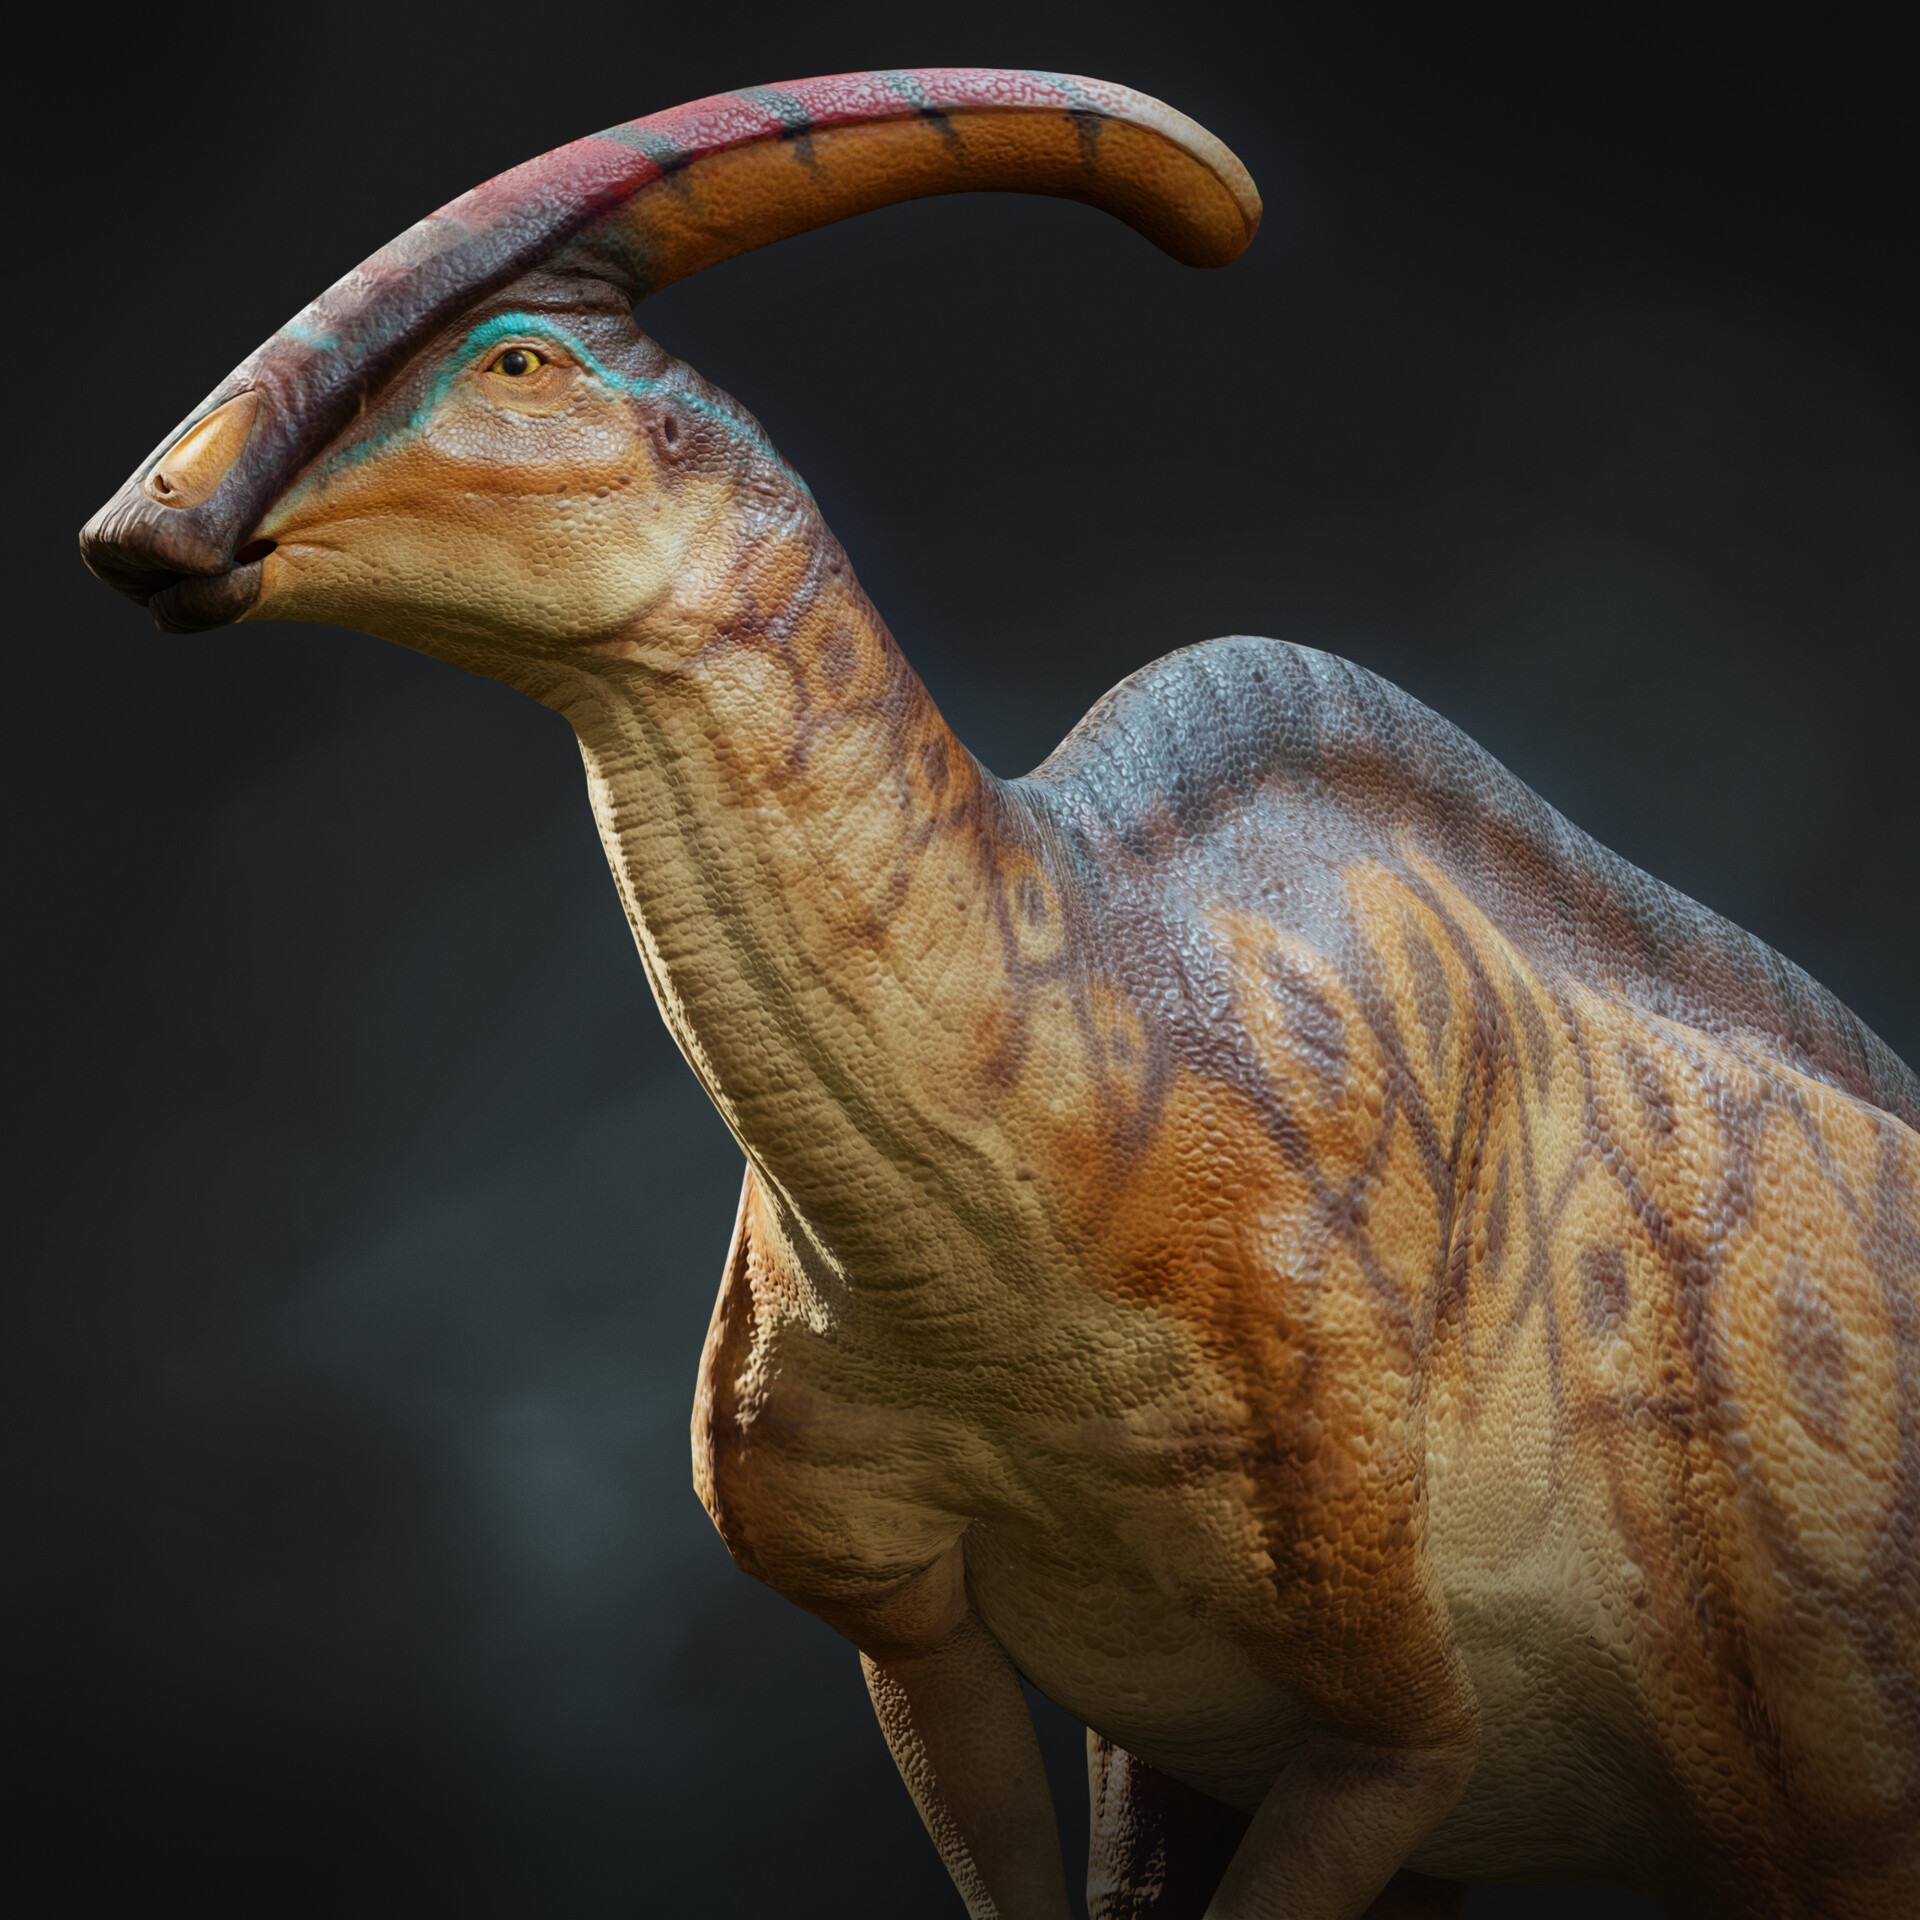 ArtStation - 3D Dino - Parasaurolophus